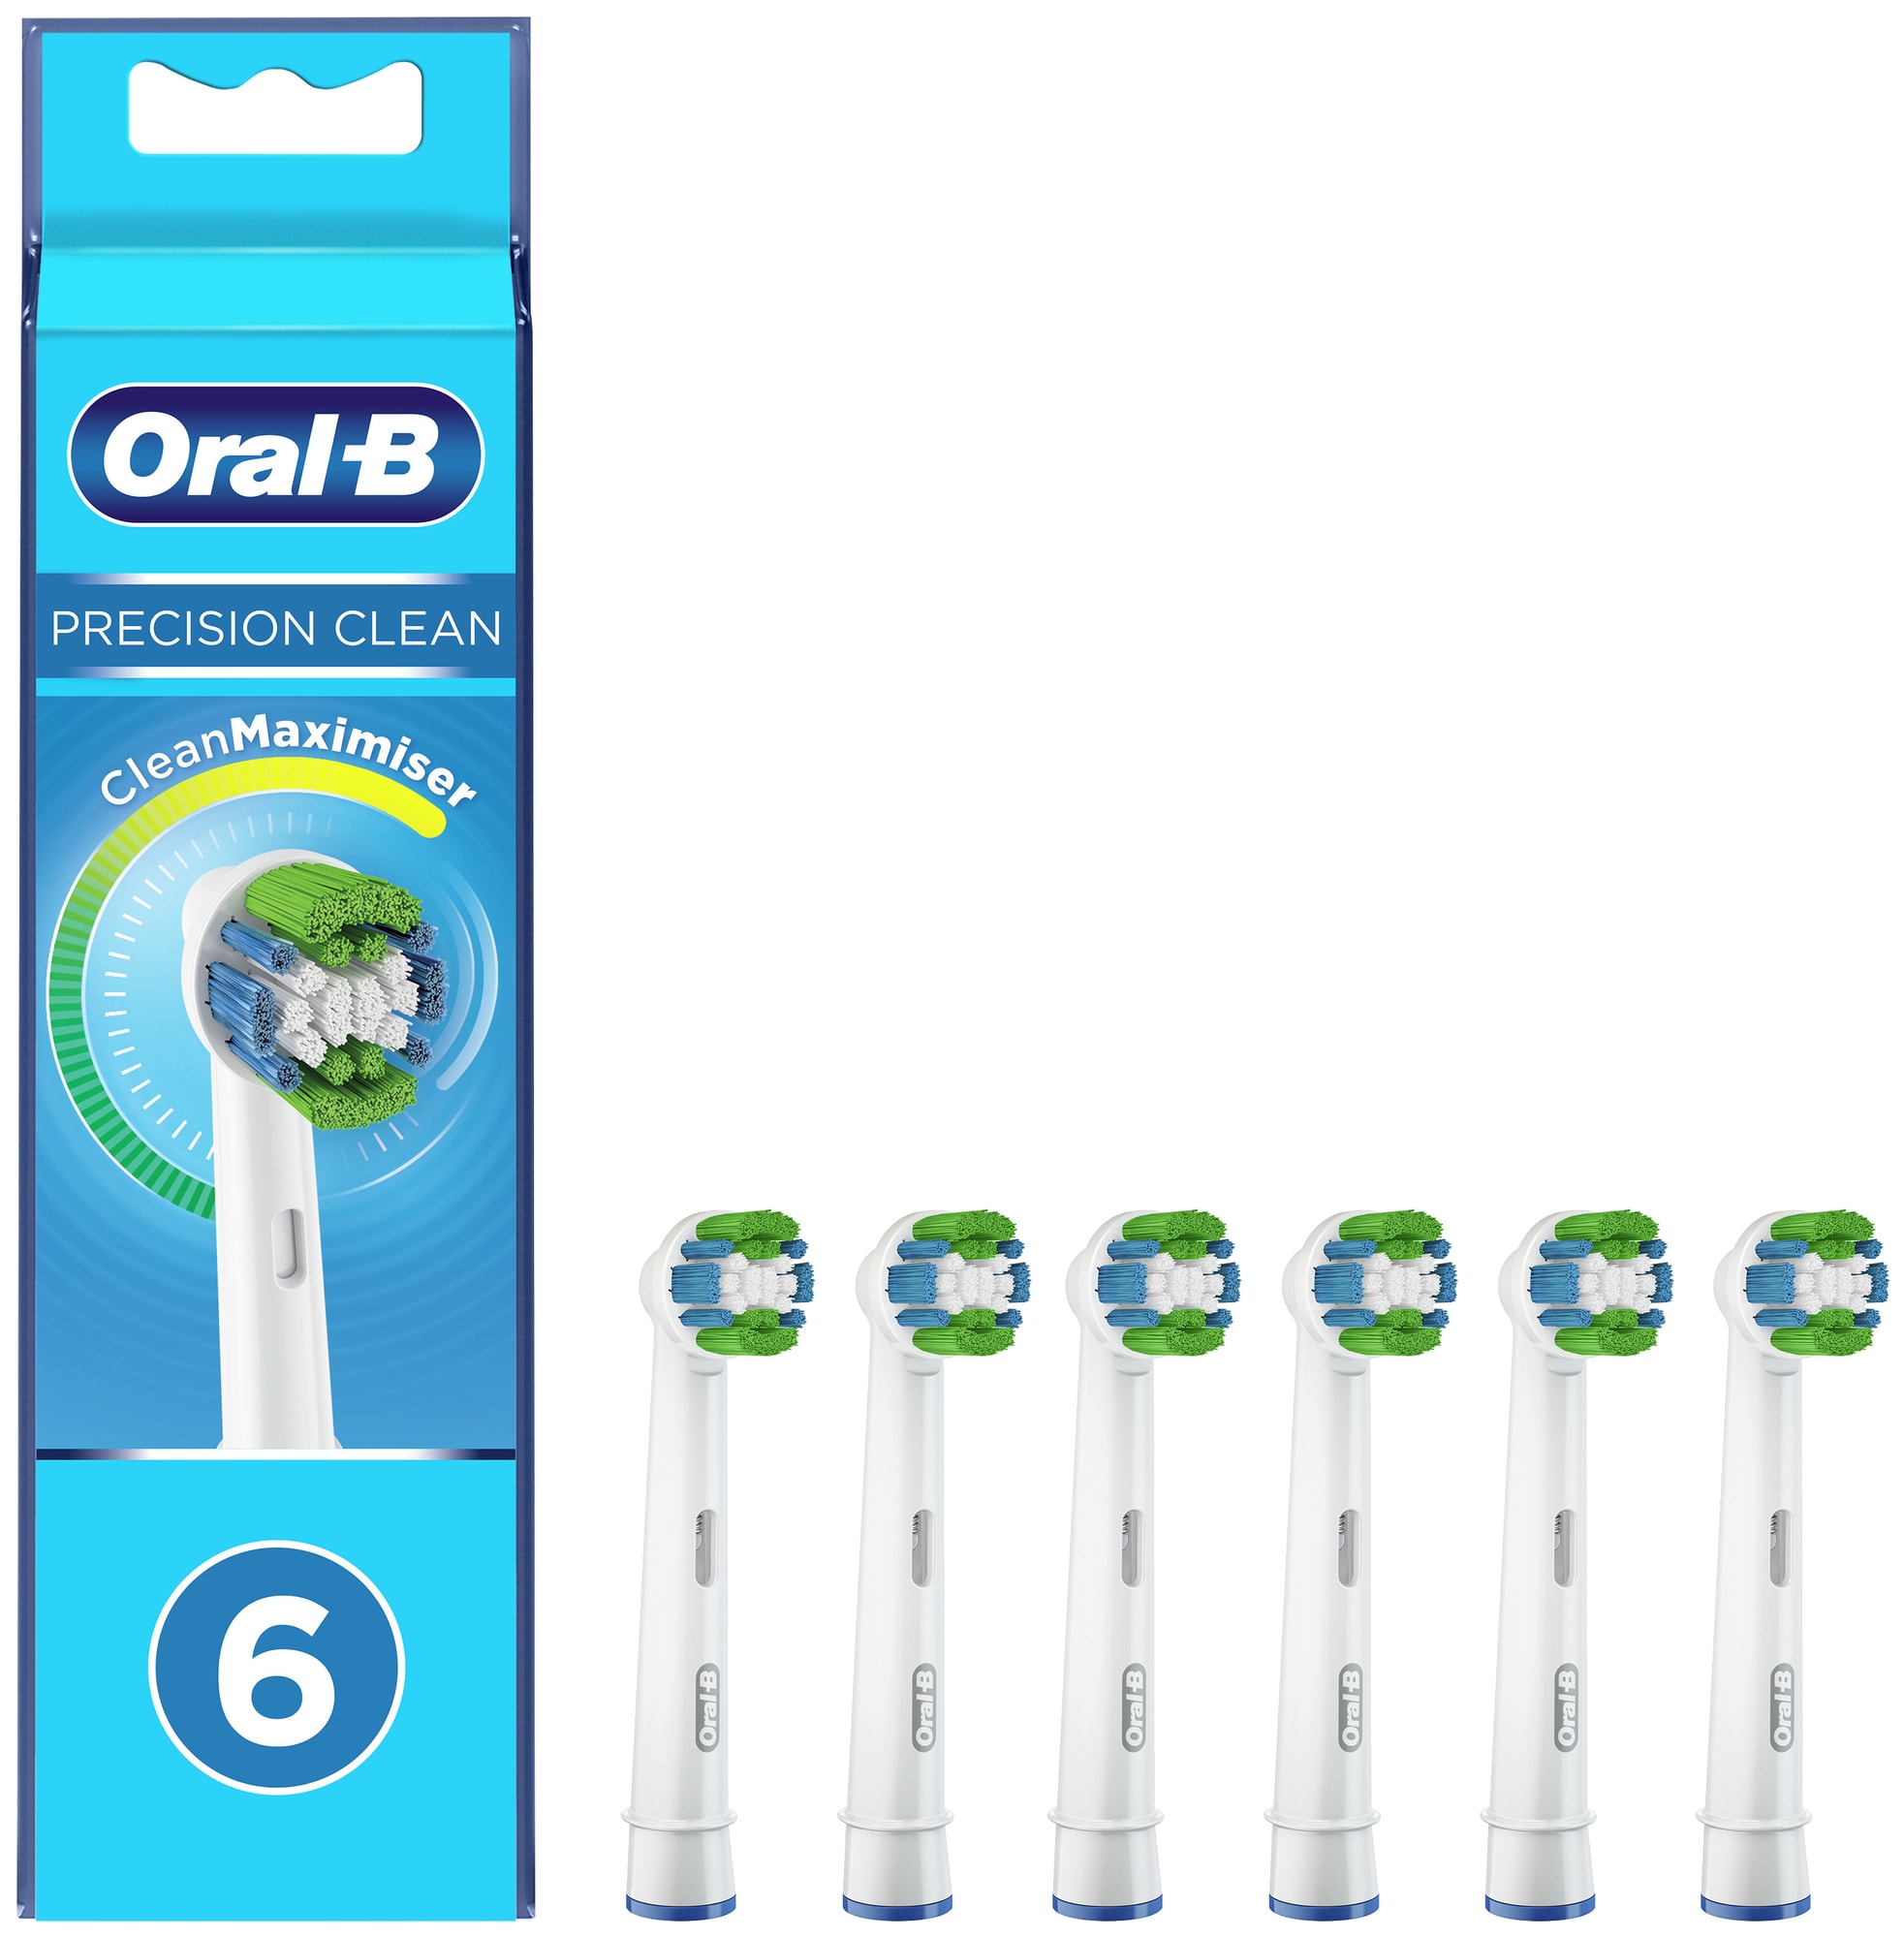 Billede af Oral-B Precision tandbørstehoveder 321798 (6-pak) hos Elgiganten